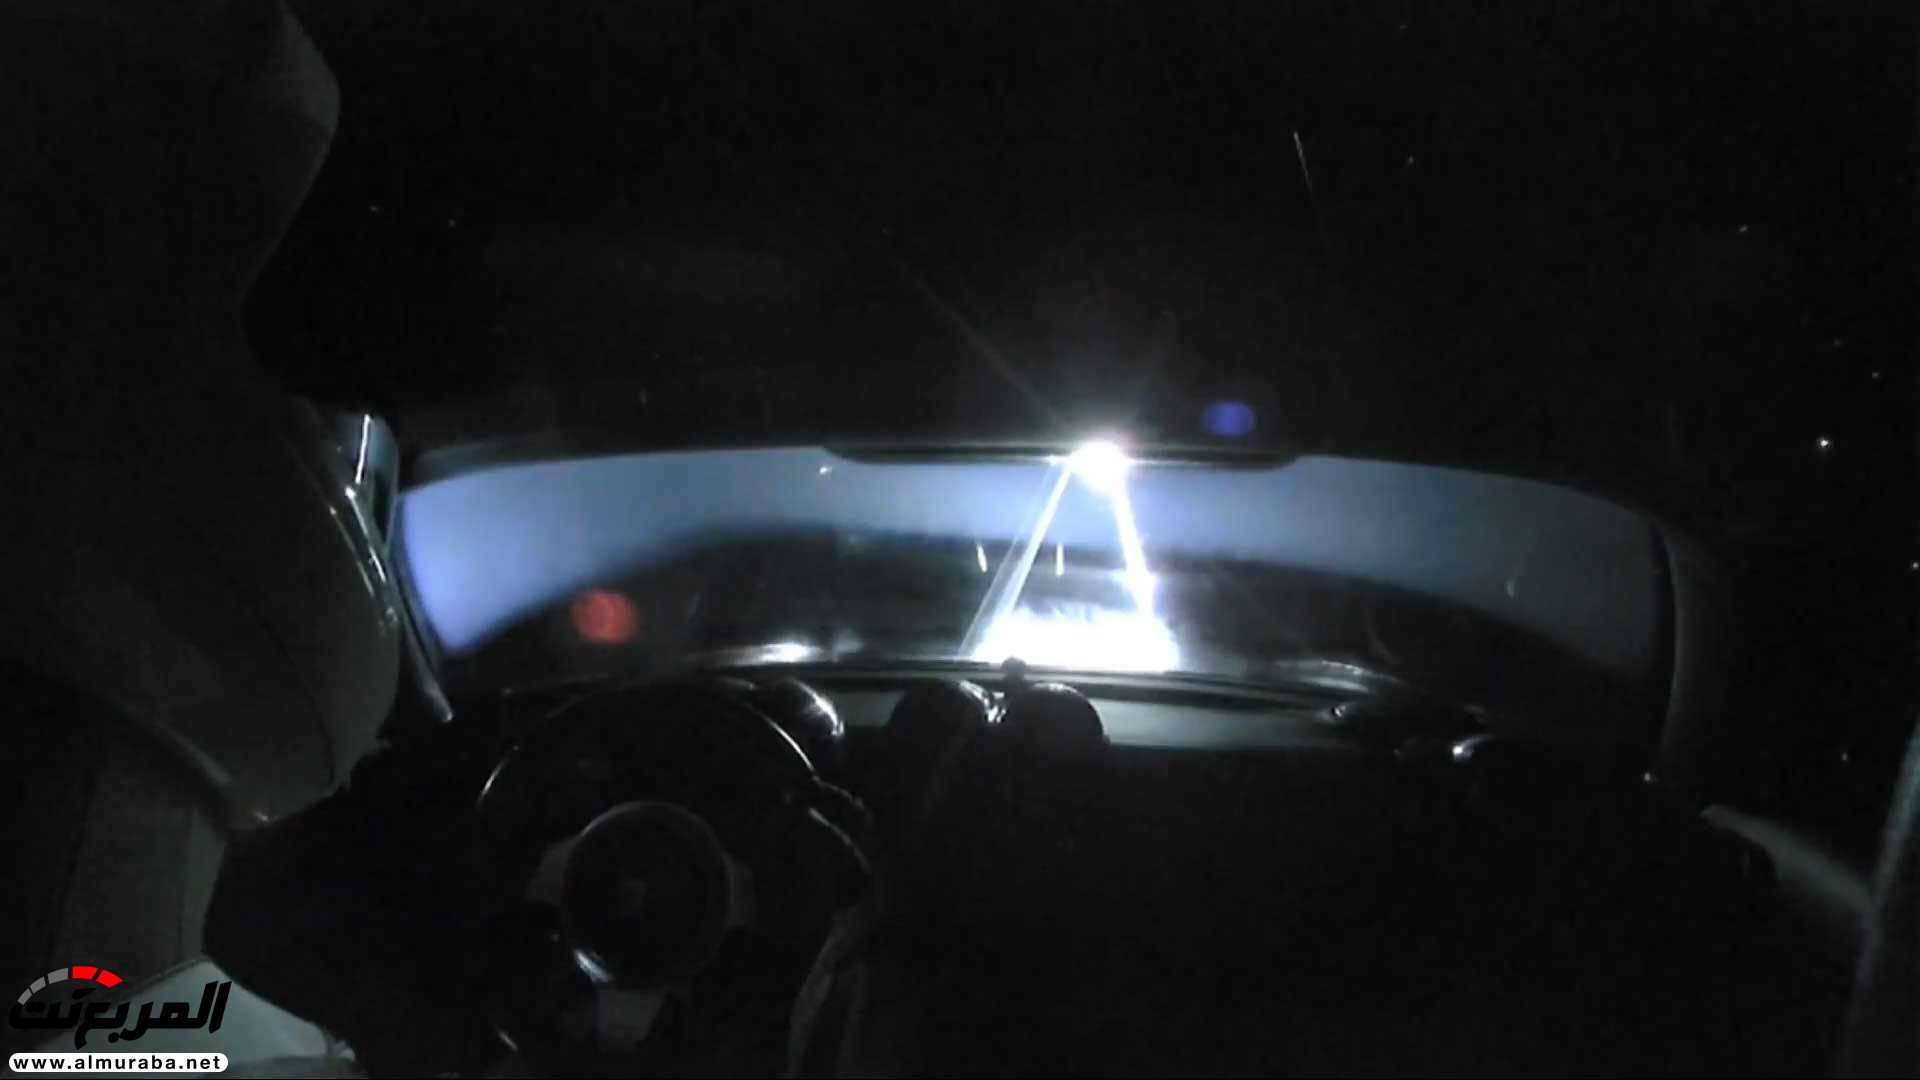 "بالفيديو والصور" إيلون ماسك يطلق تيسلا رودستر إلى المريخ في أقوى صاروخ بالعالم 40